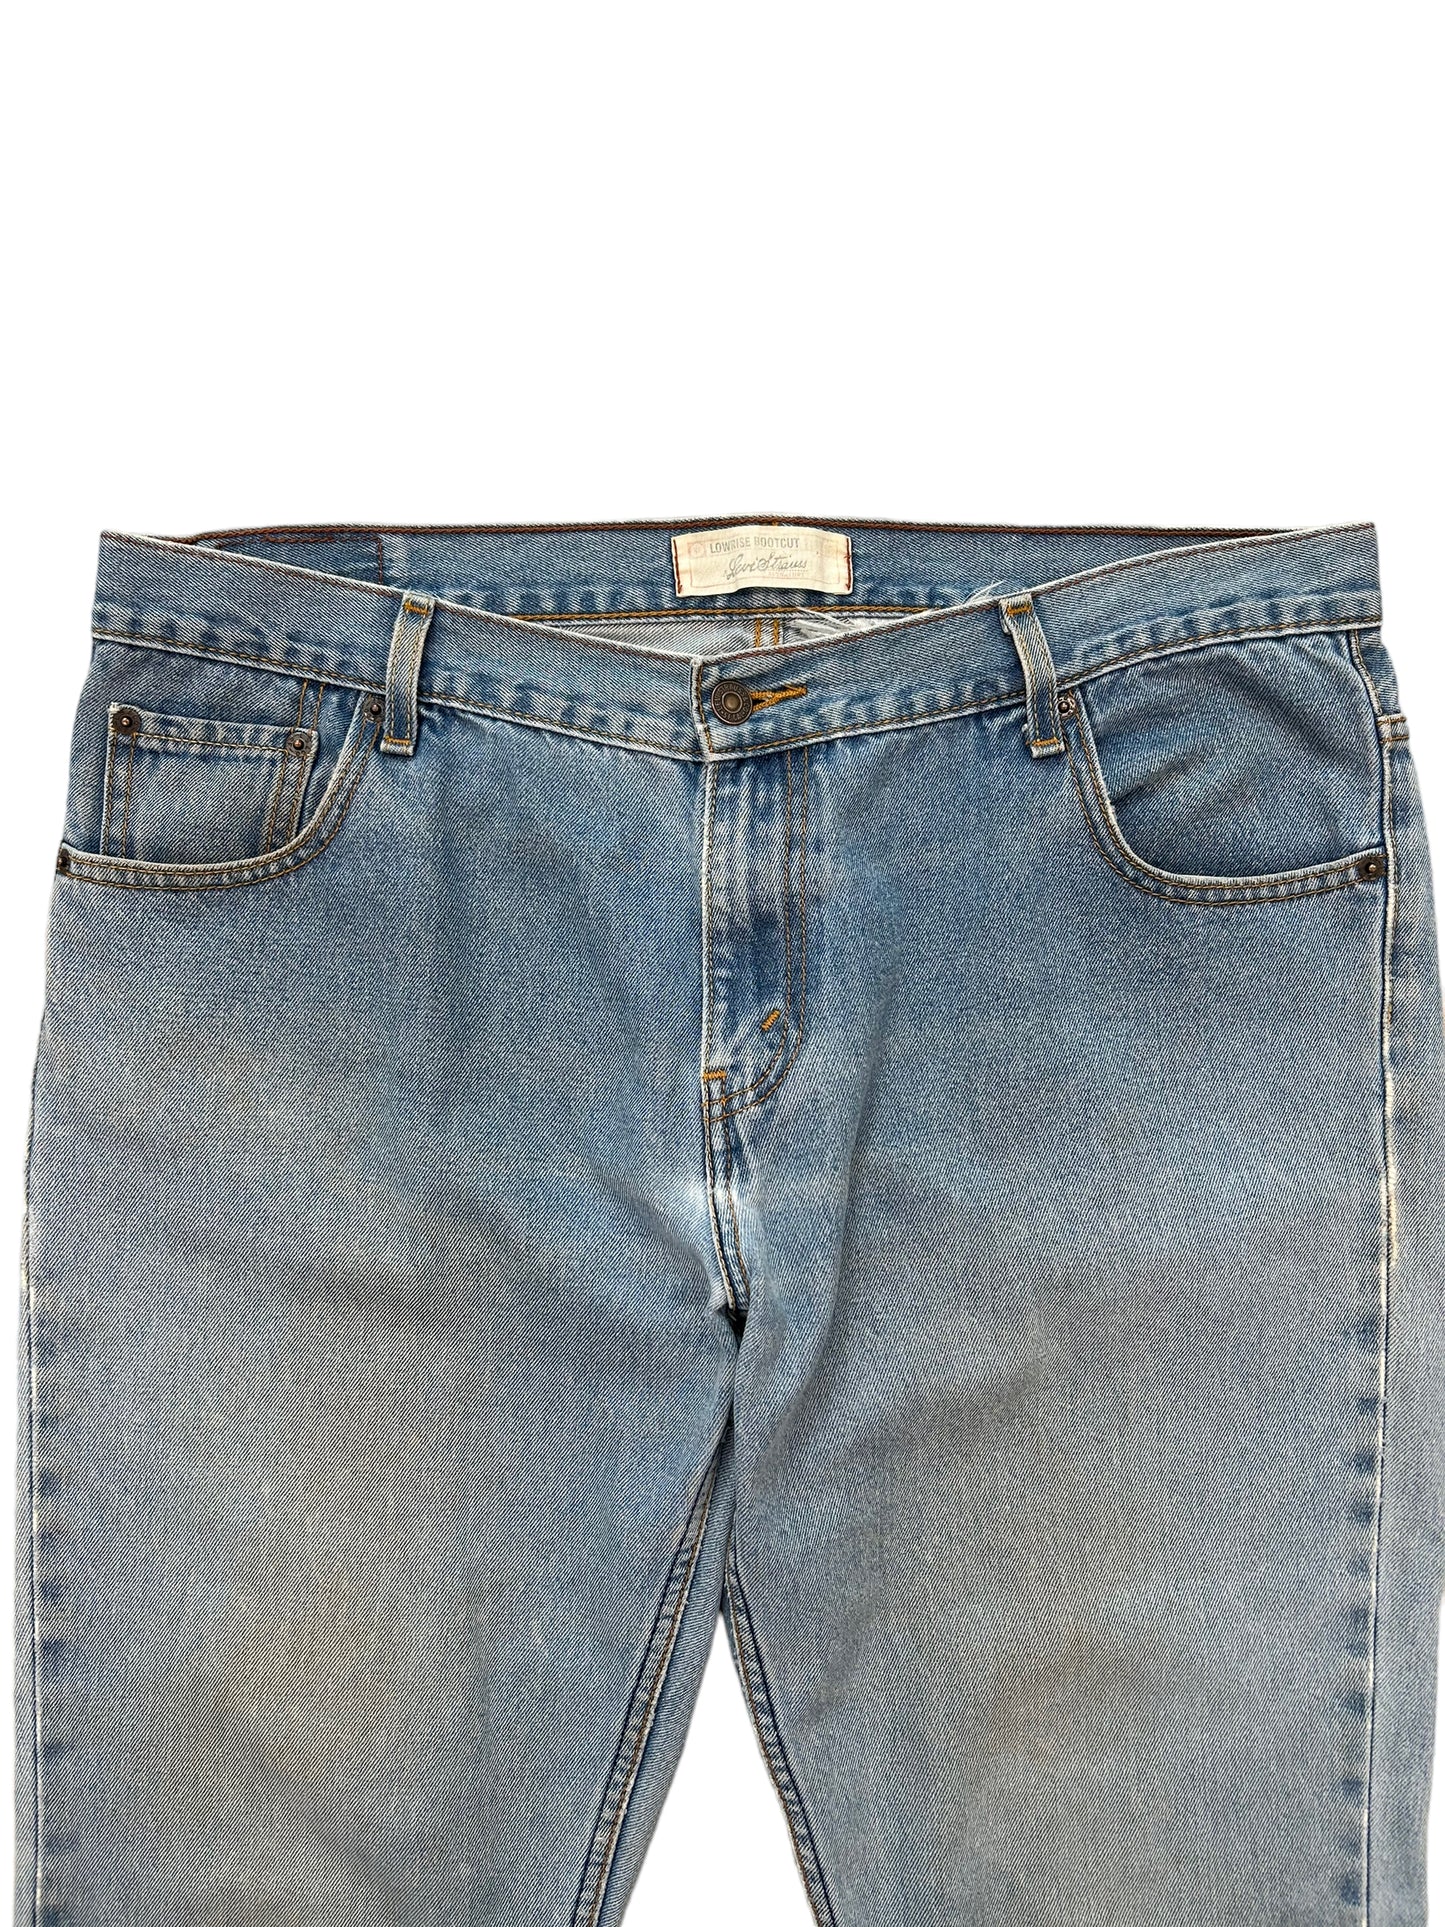 Vintage Levis Bootcut Denim Jeans